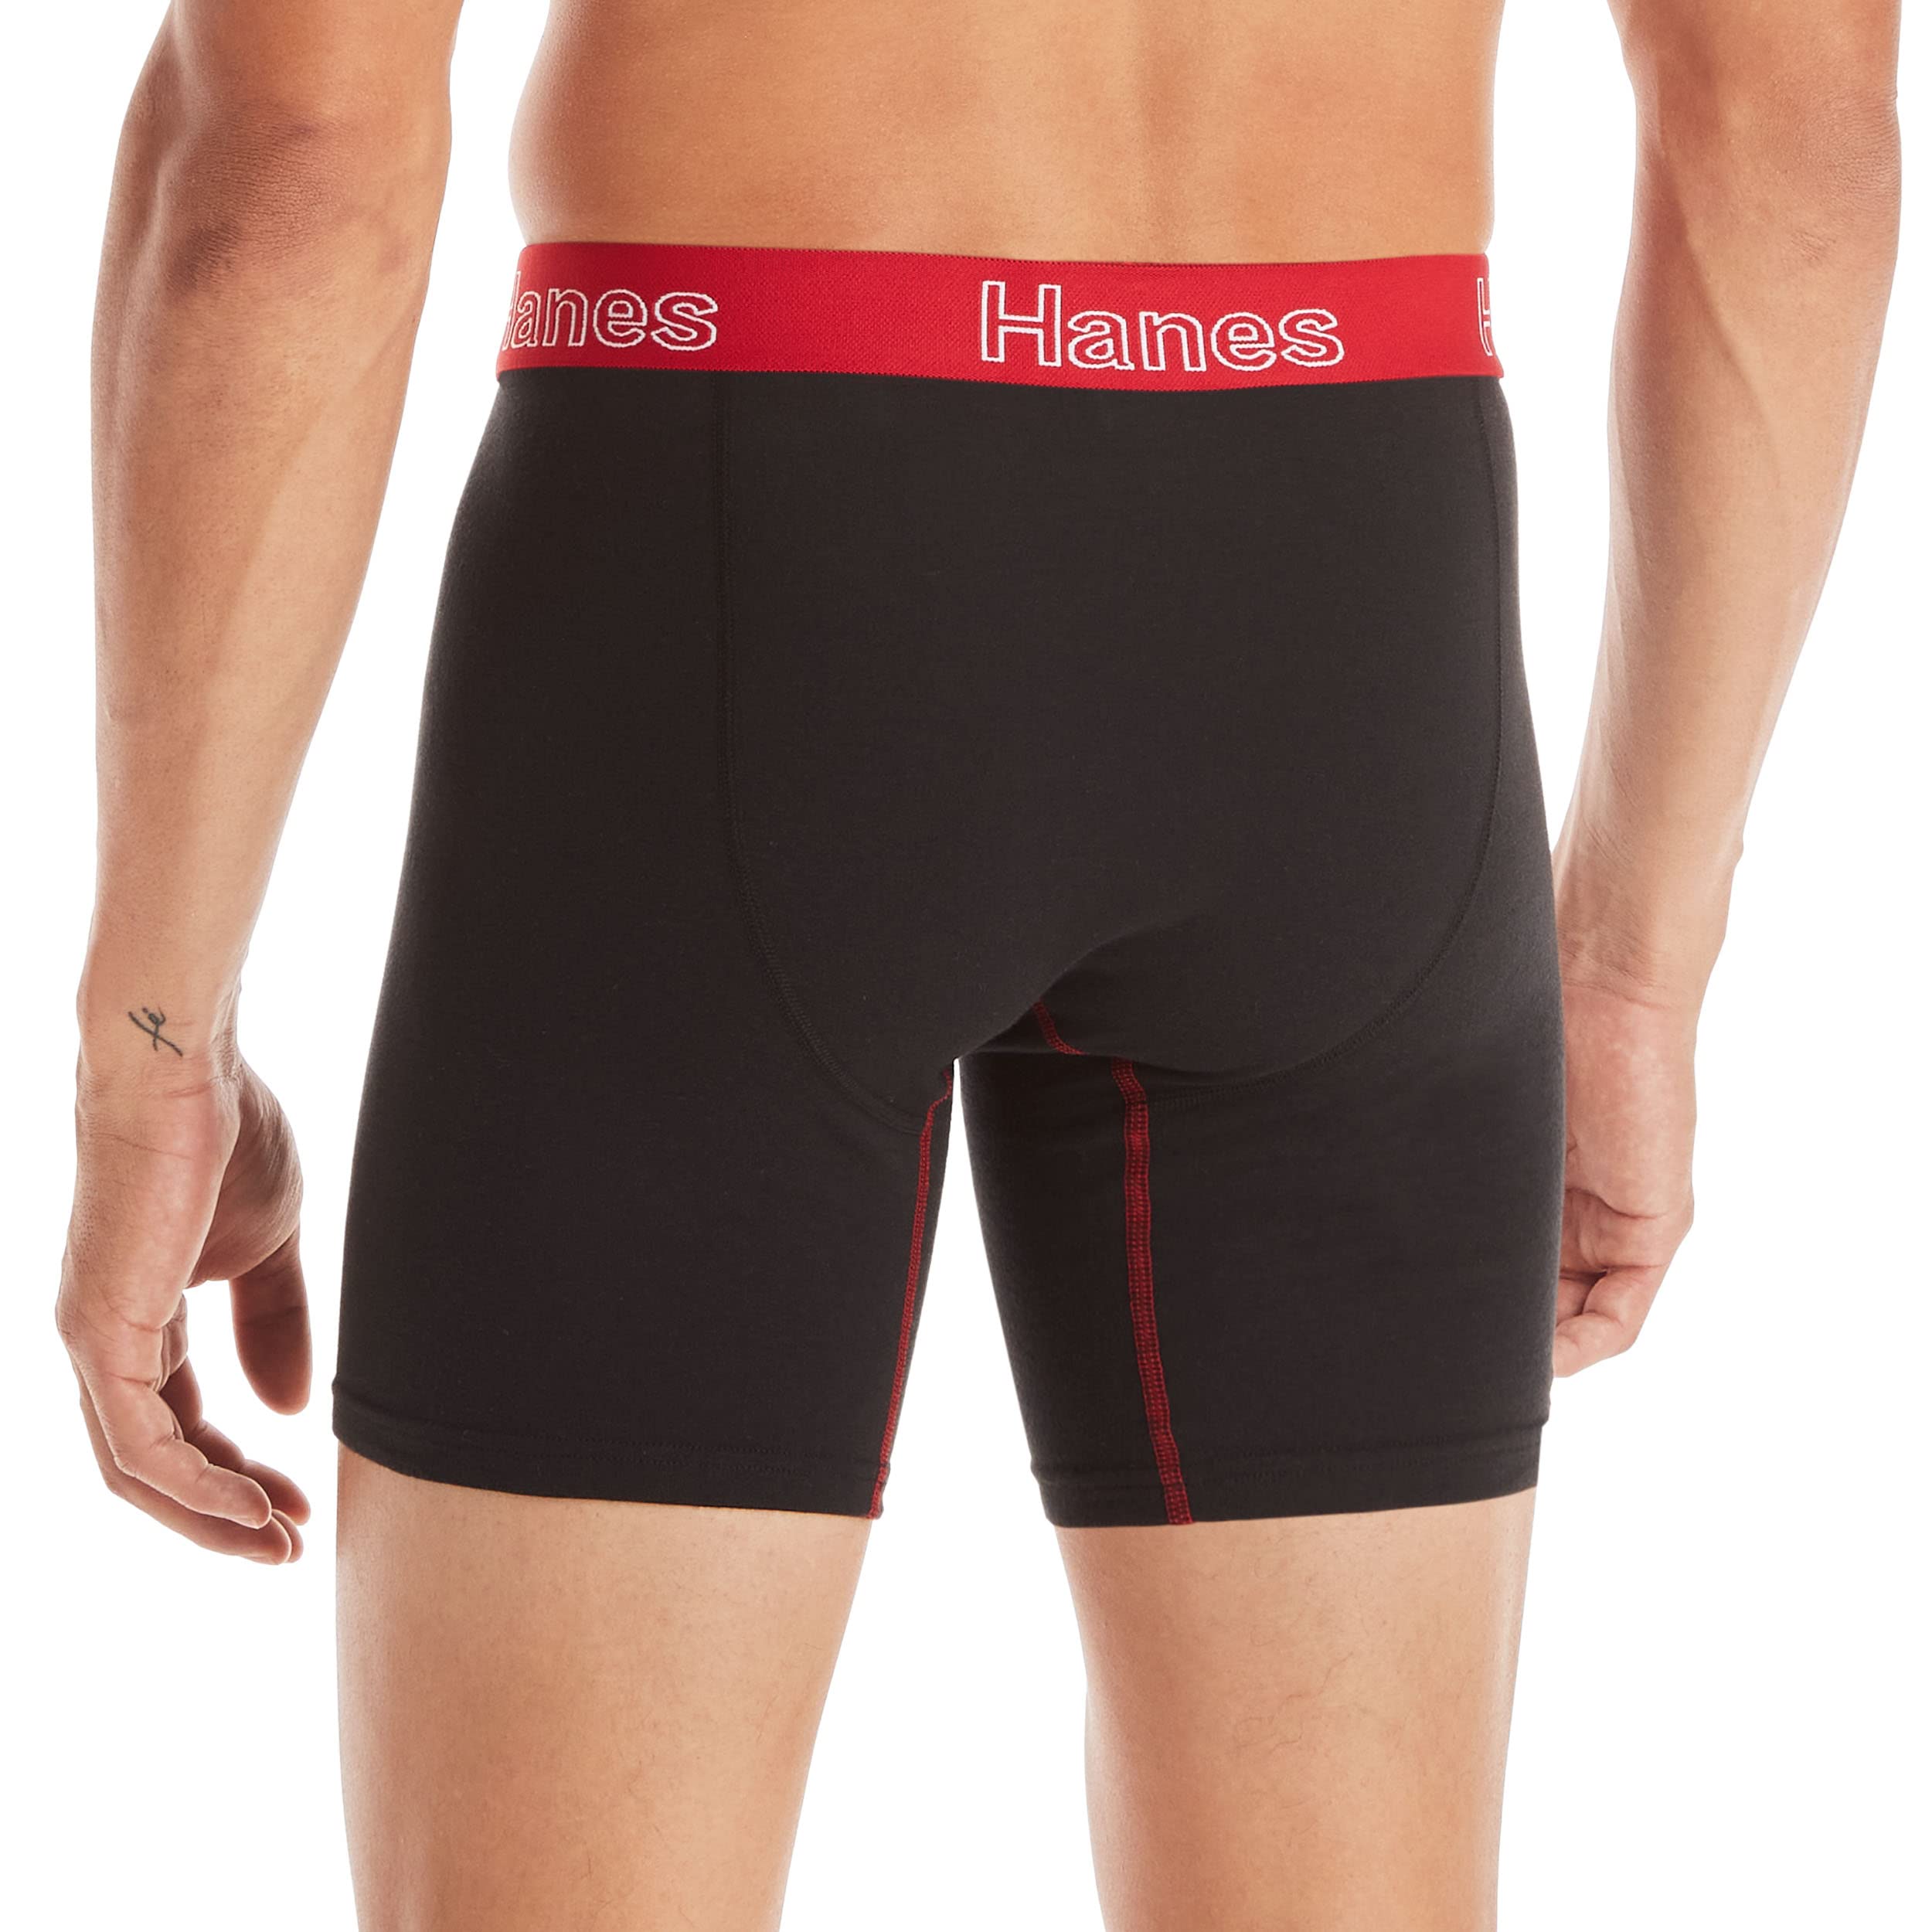 Hanes Men's Underwear Boxer Briefs, Cotton Stretch Moisture-Wicking Underwear, Multi-pack